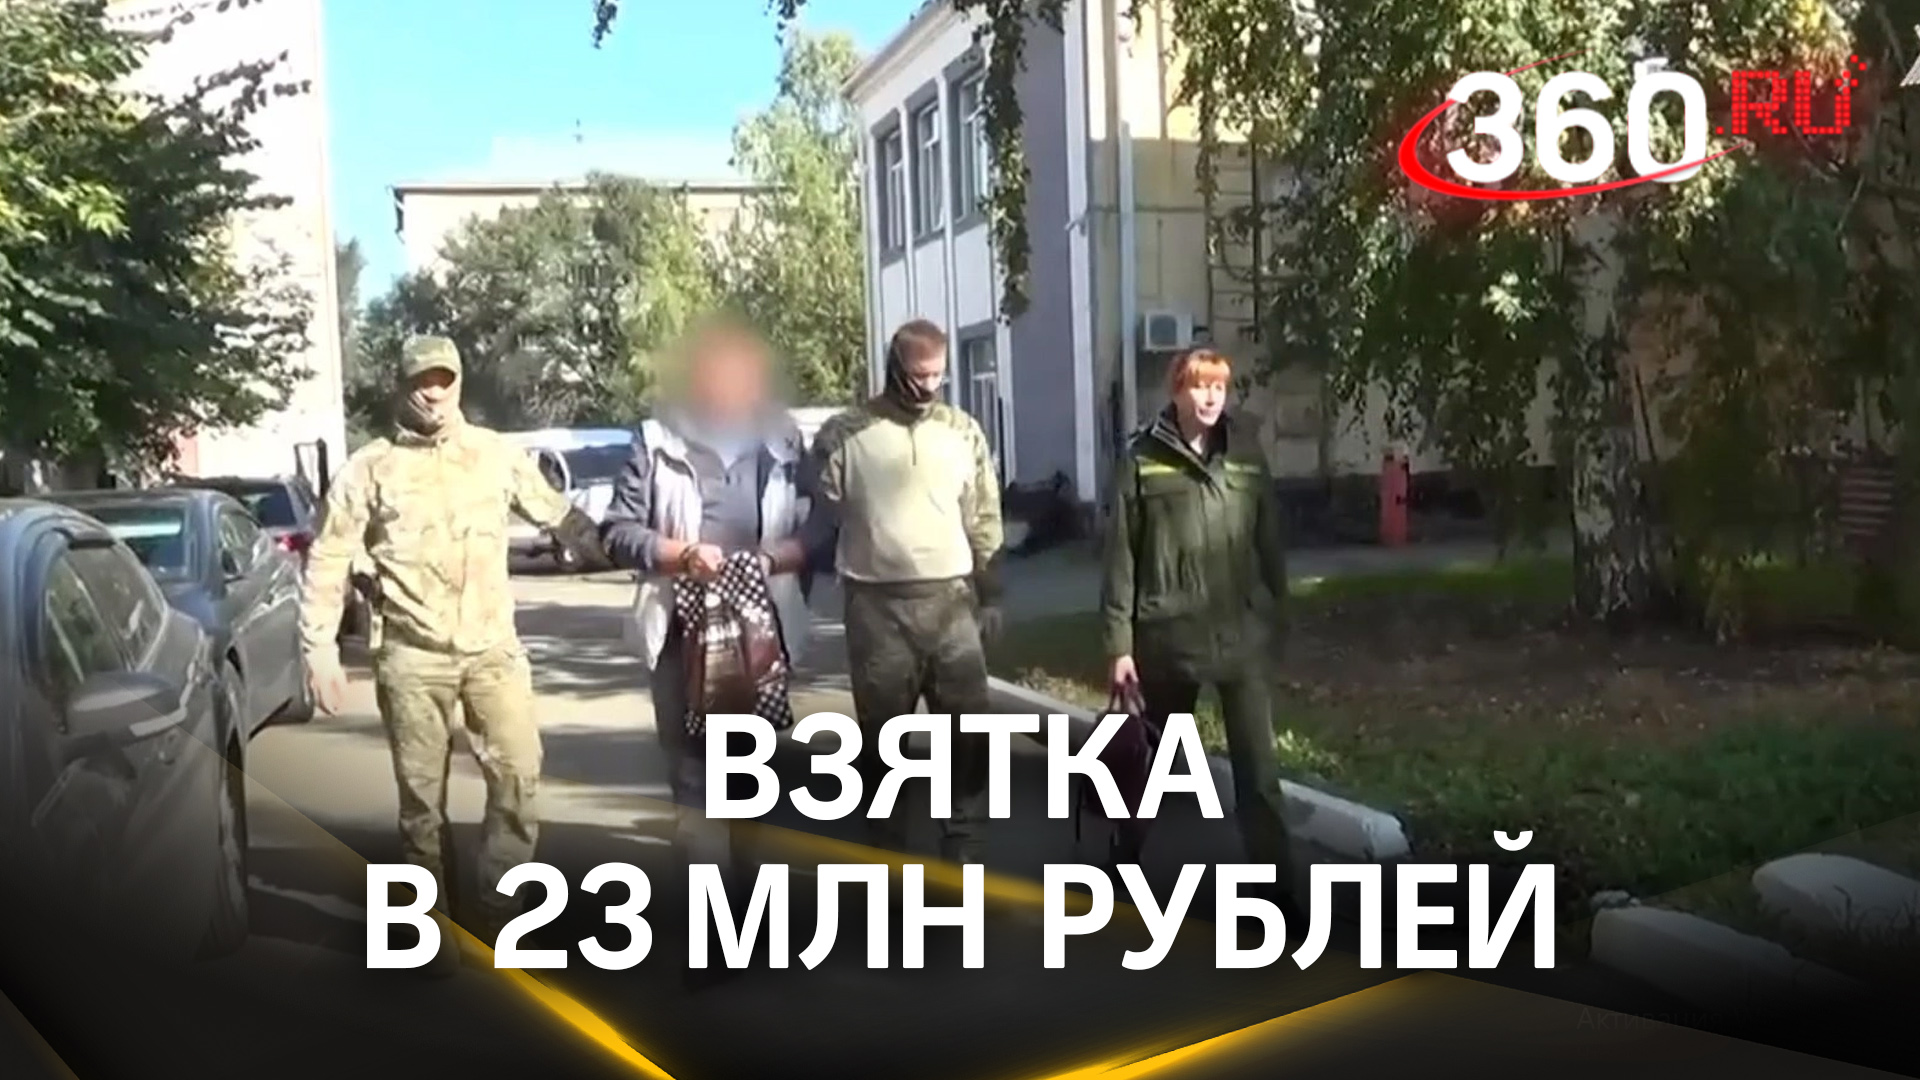 Новый арест после смертельного ДТП с трамваями в Кемерове за взятки в 23 млн руб.